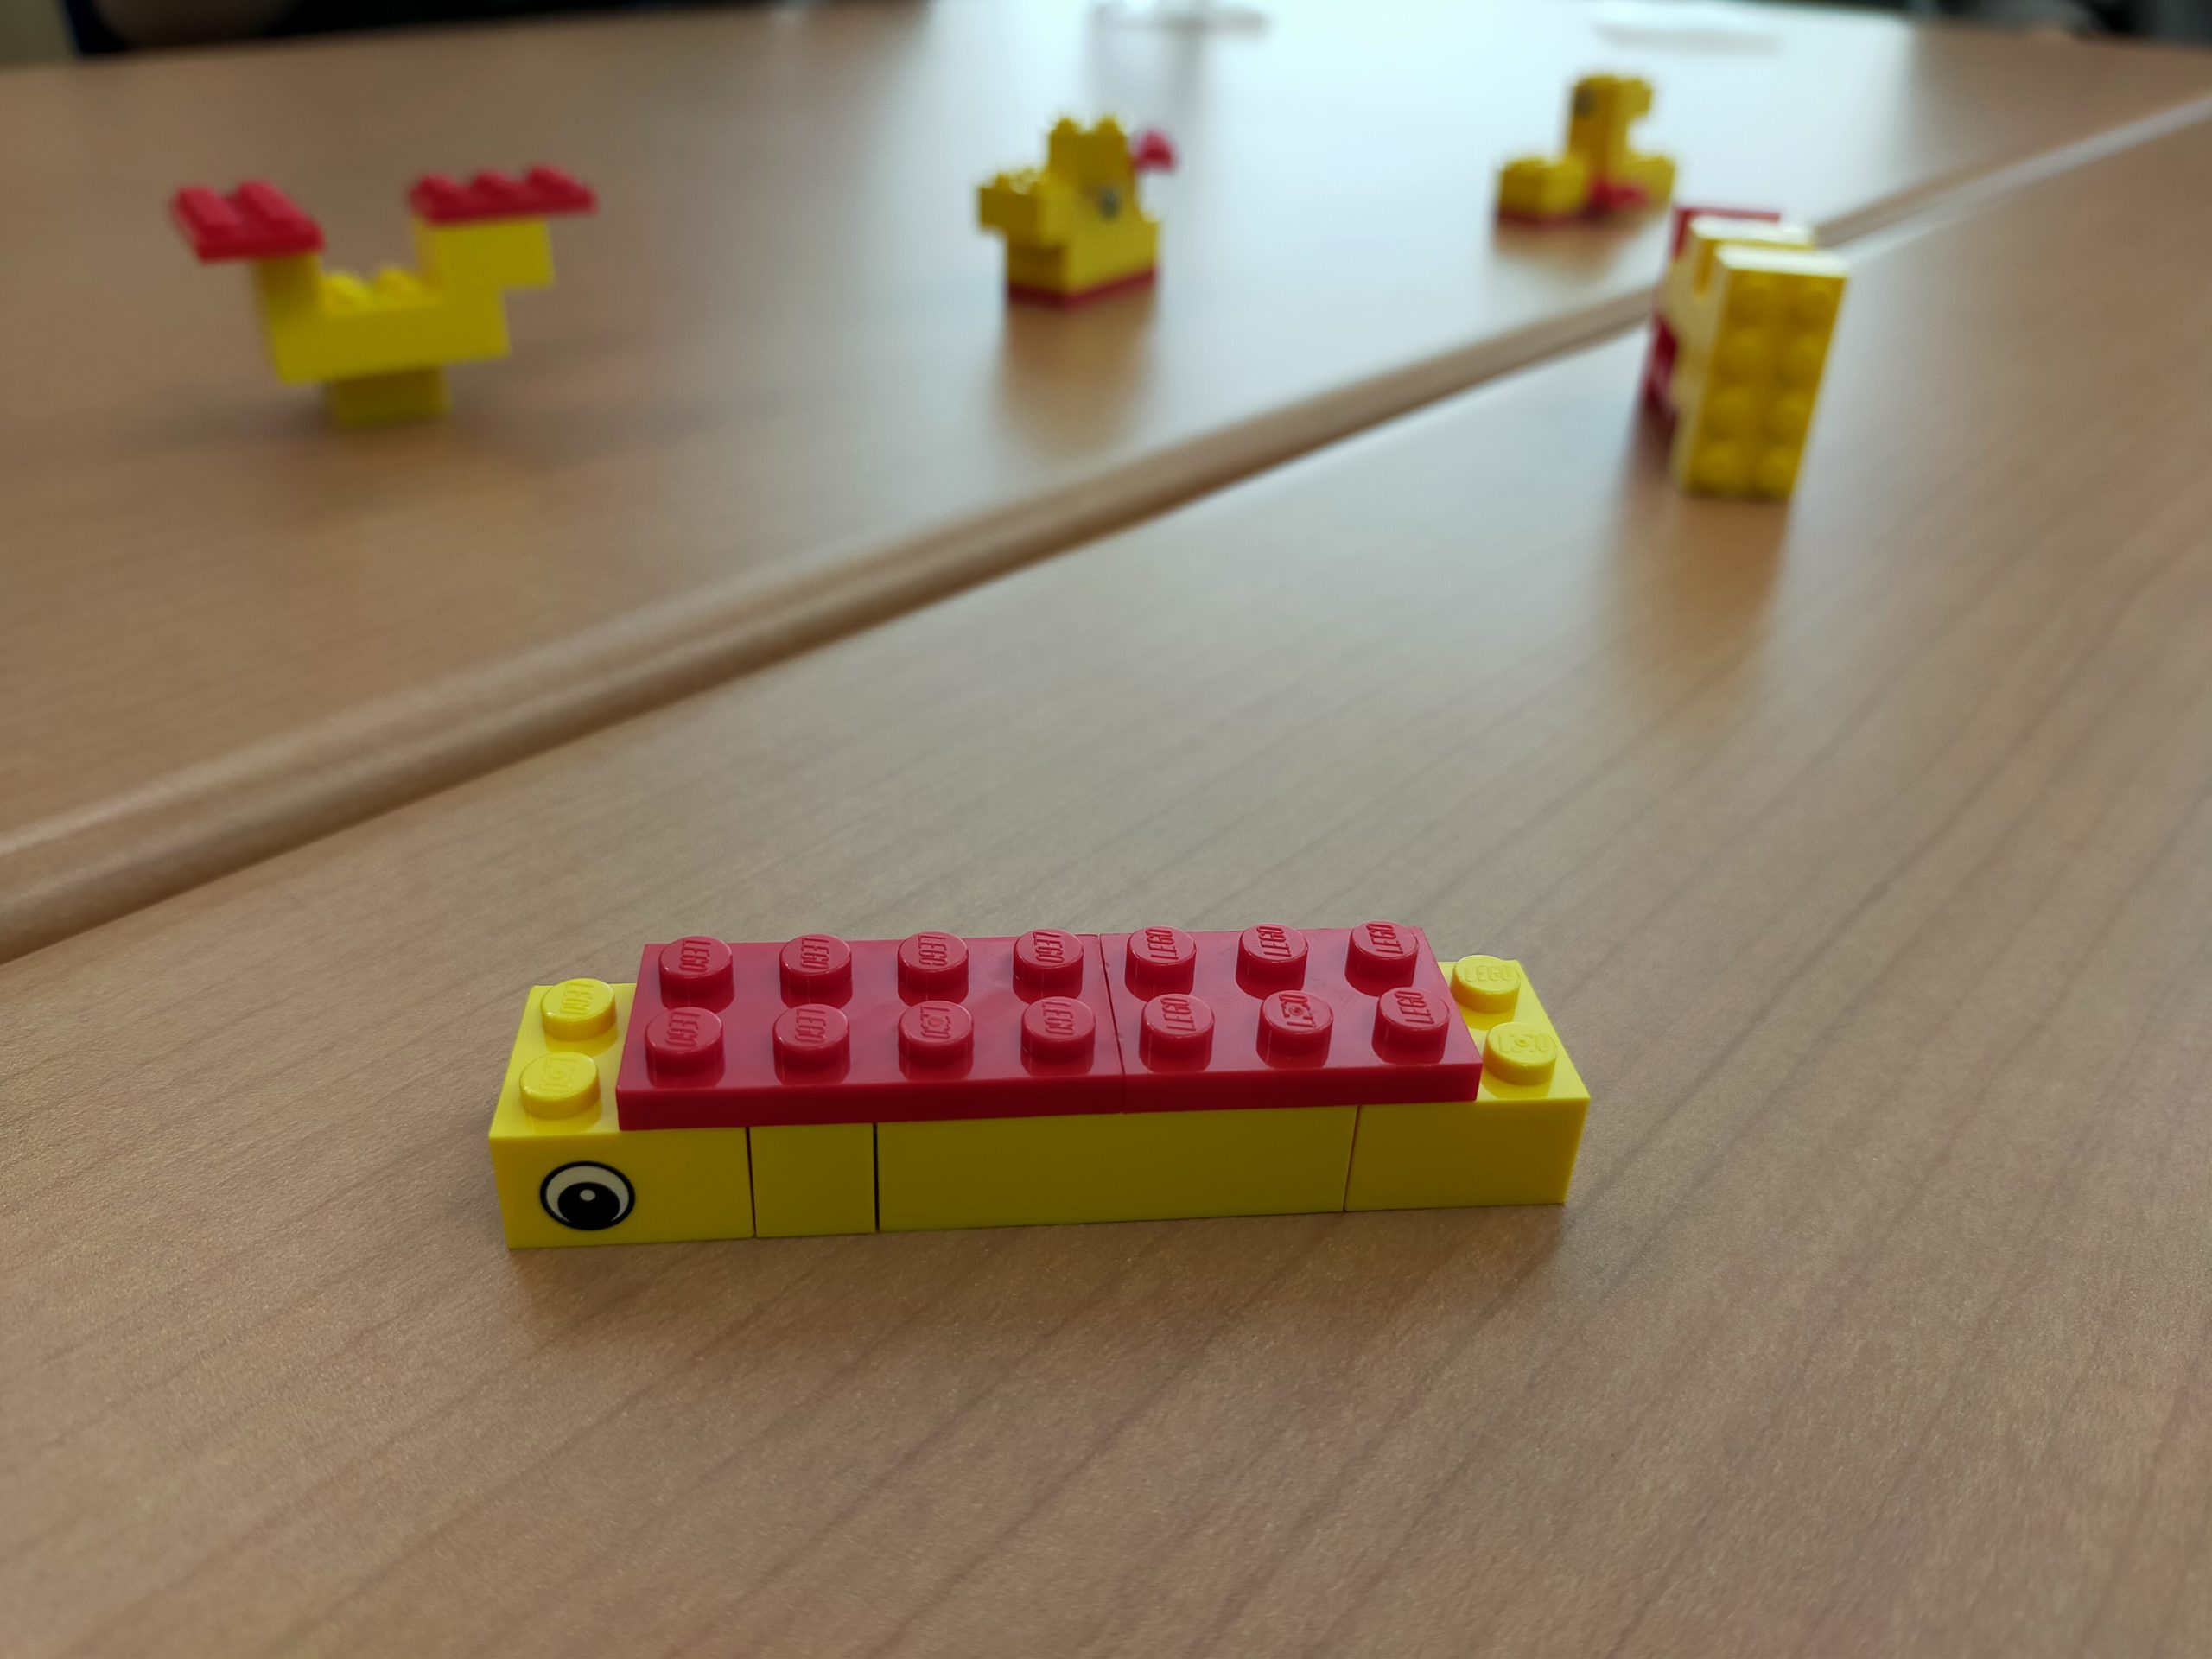 「業務」を表現したイモムシ型のレゴ・ブロック